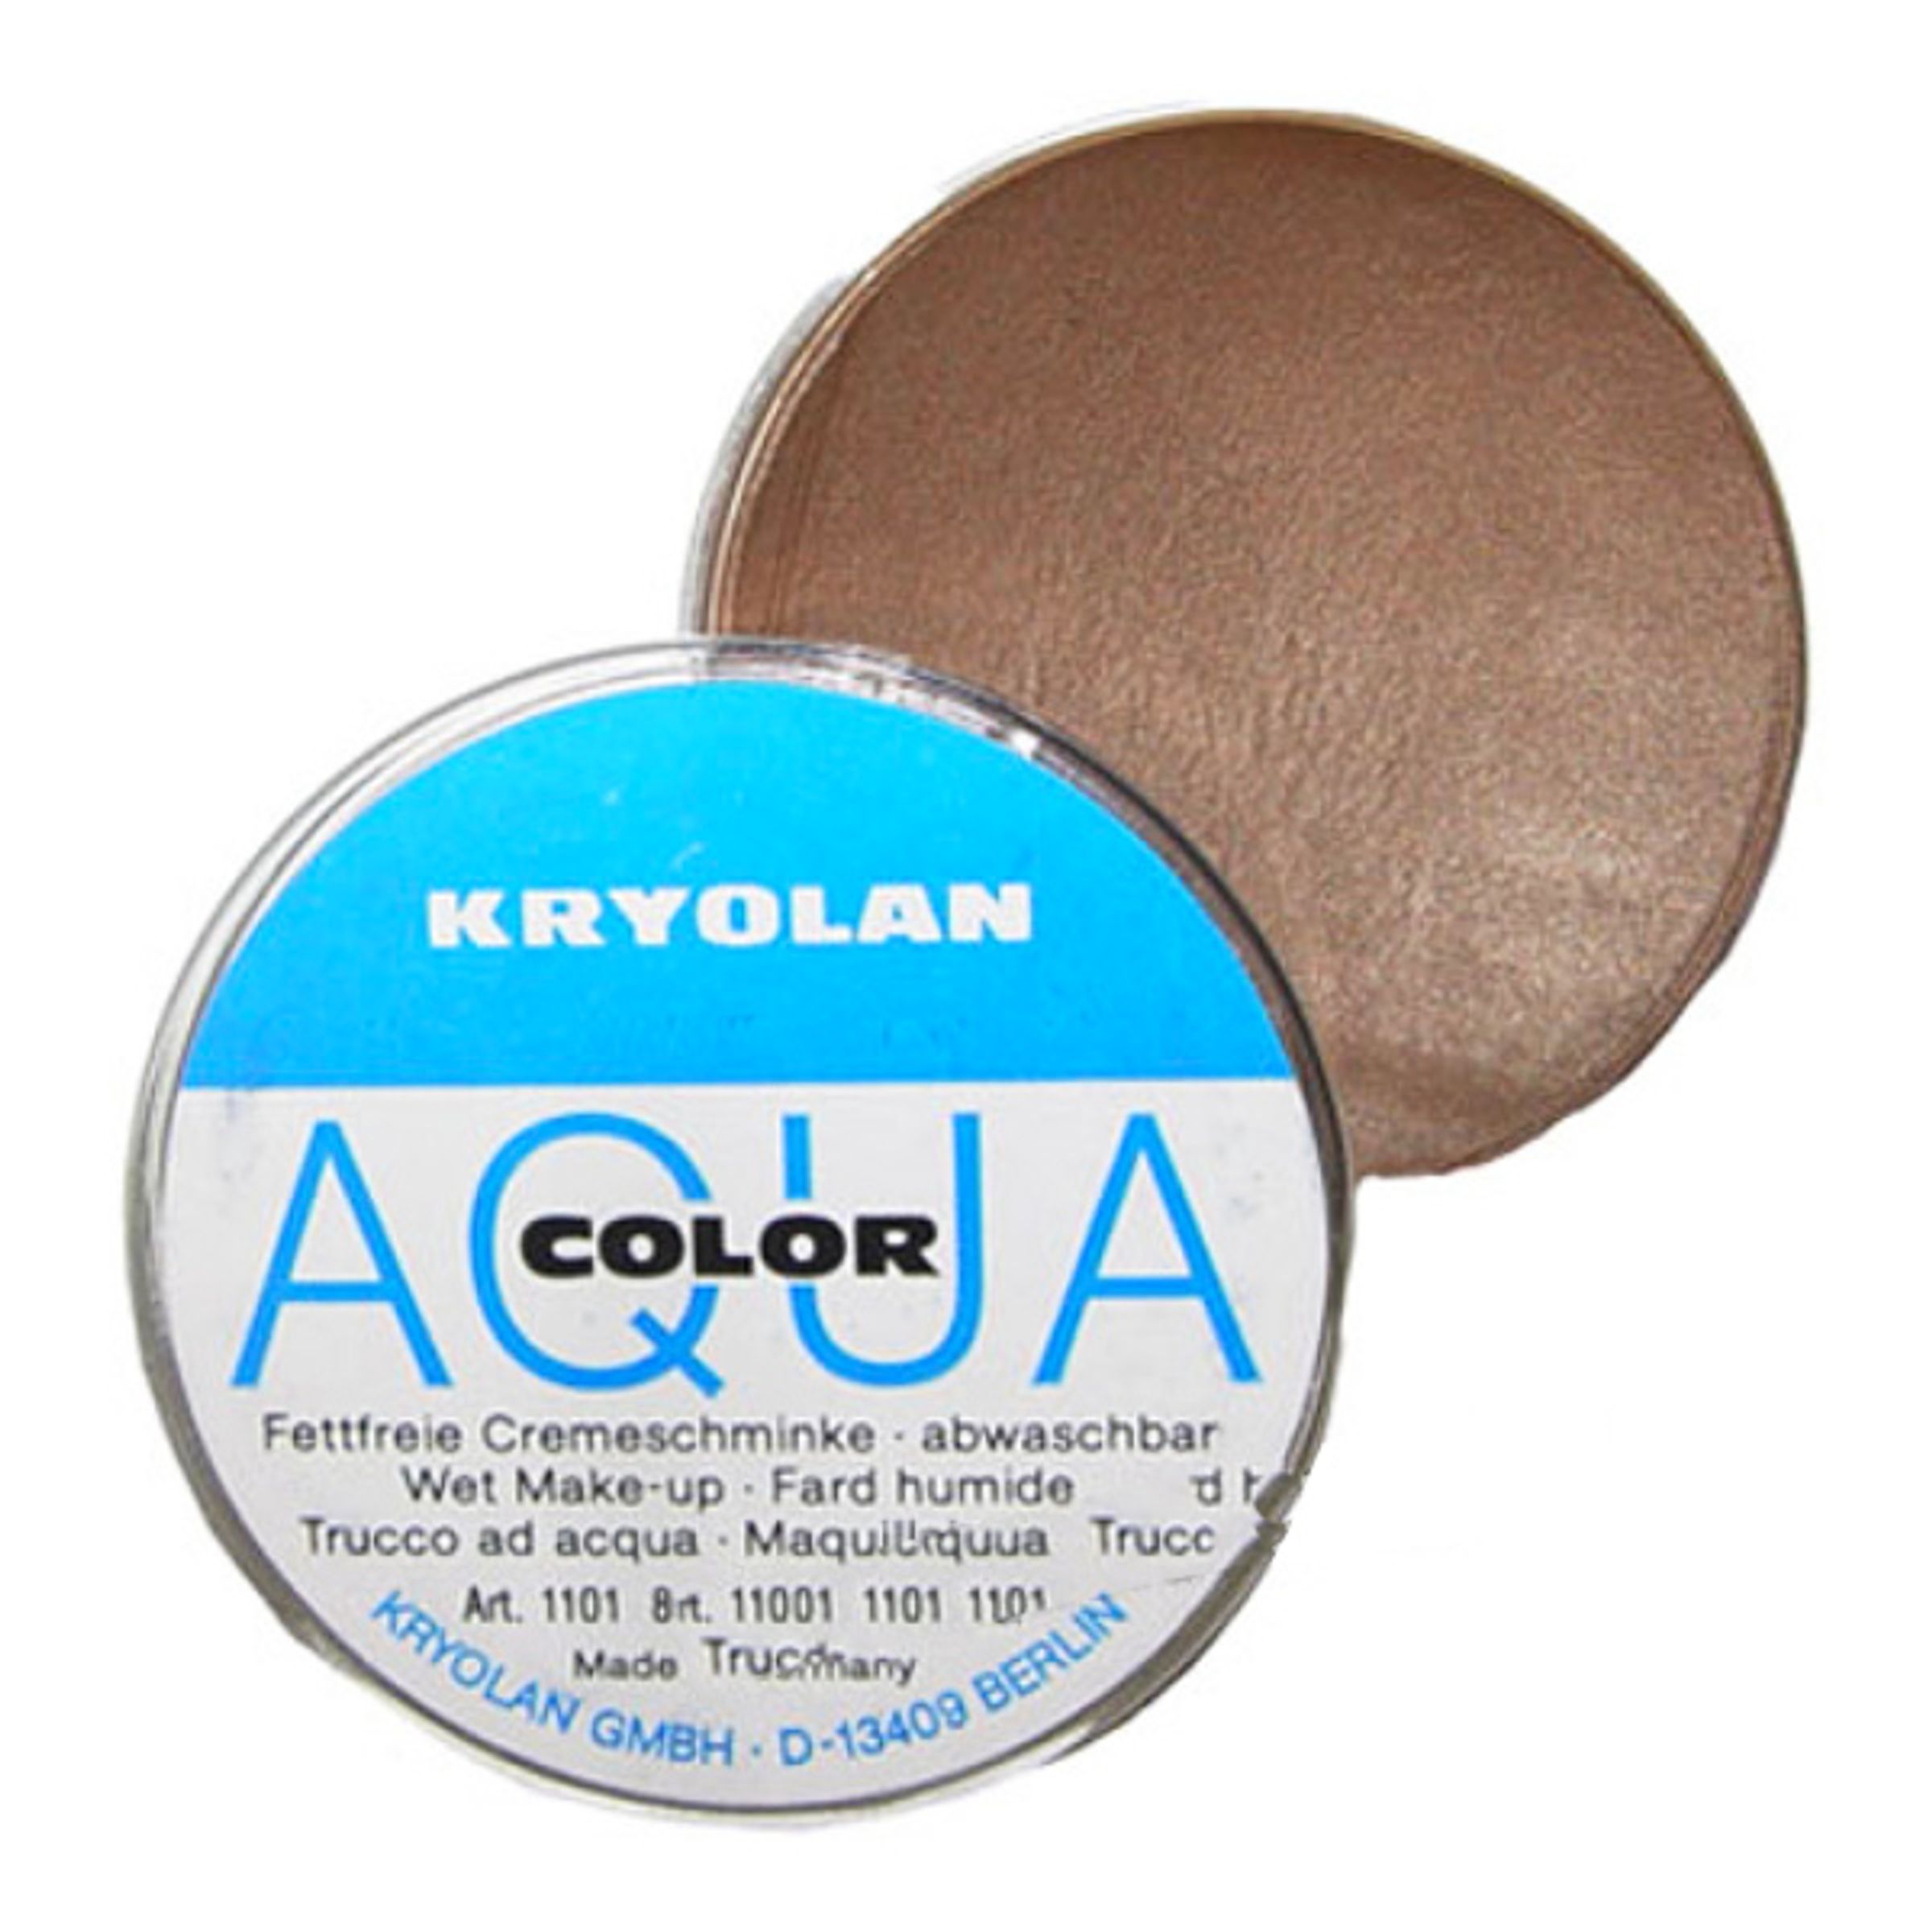 Kryolan Aquacolor Smink - Brun